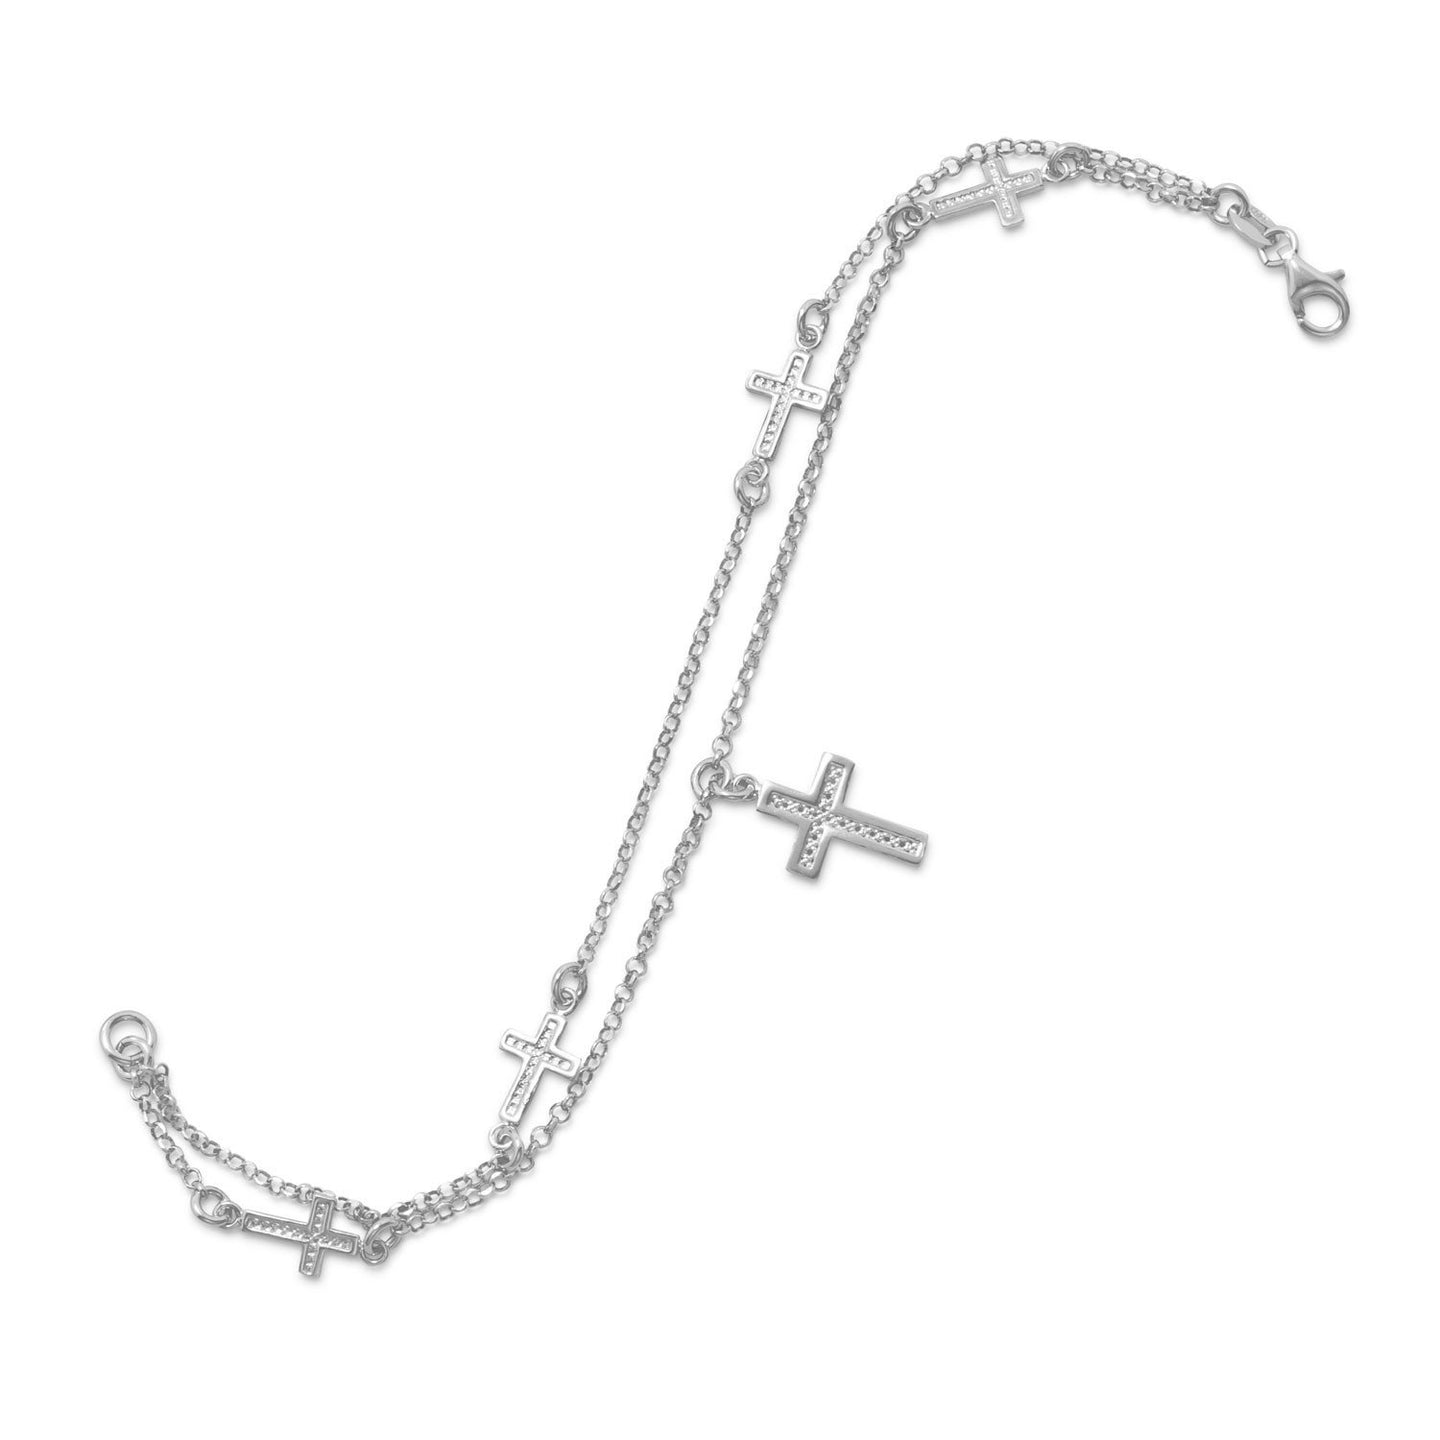 Rhodium Plated Double Strand Cross Charm Bracelet - SoMag2